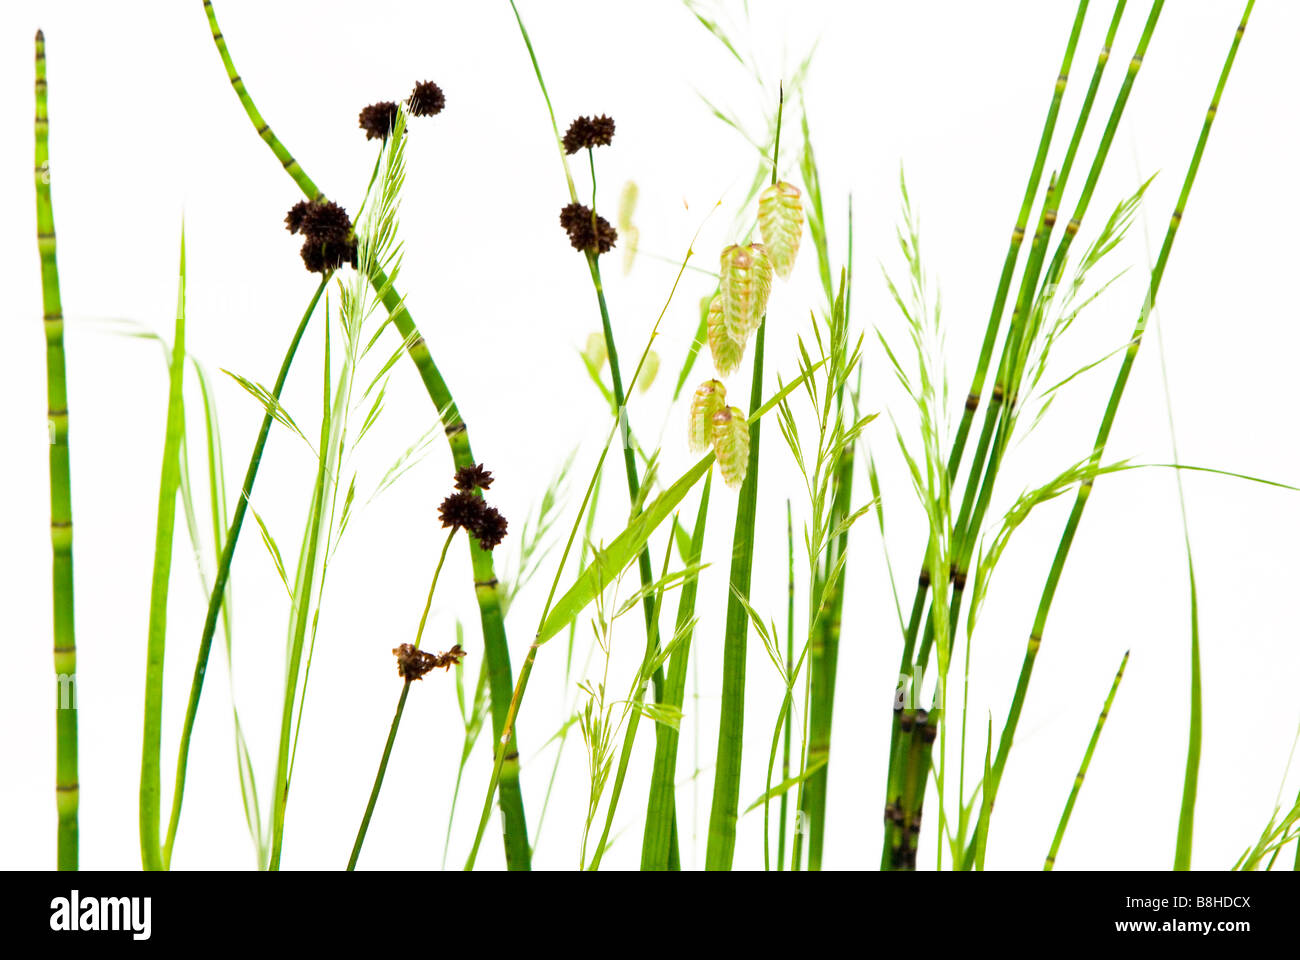 Foto de estudio de hierbas ornamentales silvestres sobre un fondo blanco. Foto de stock